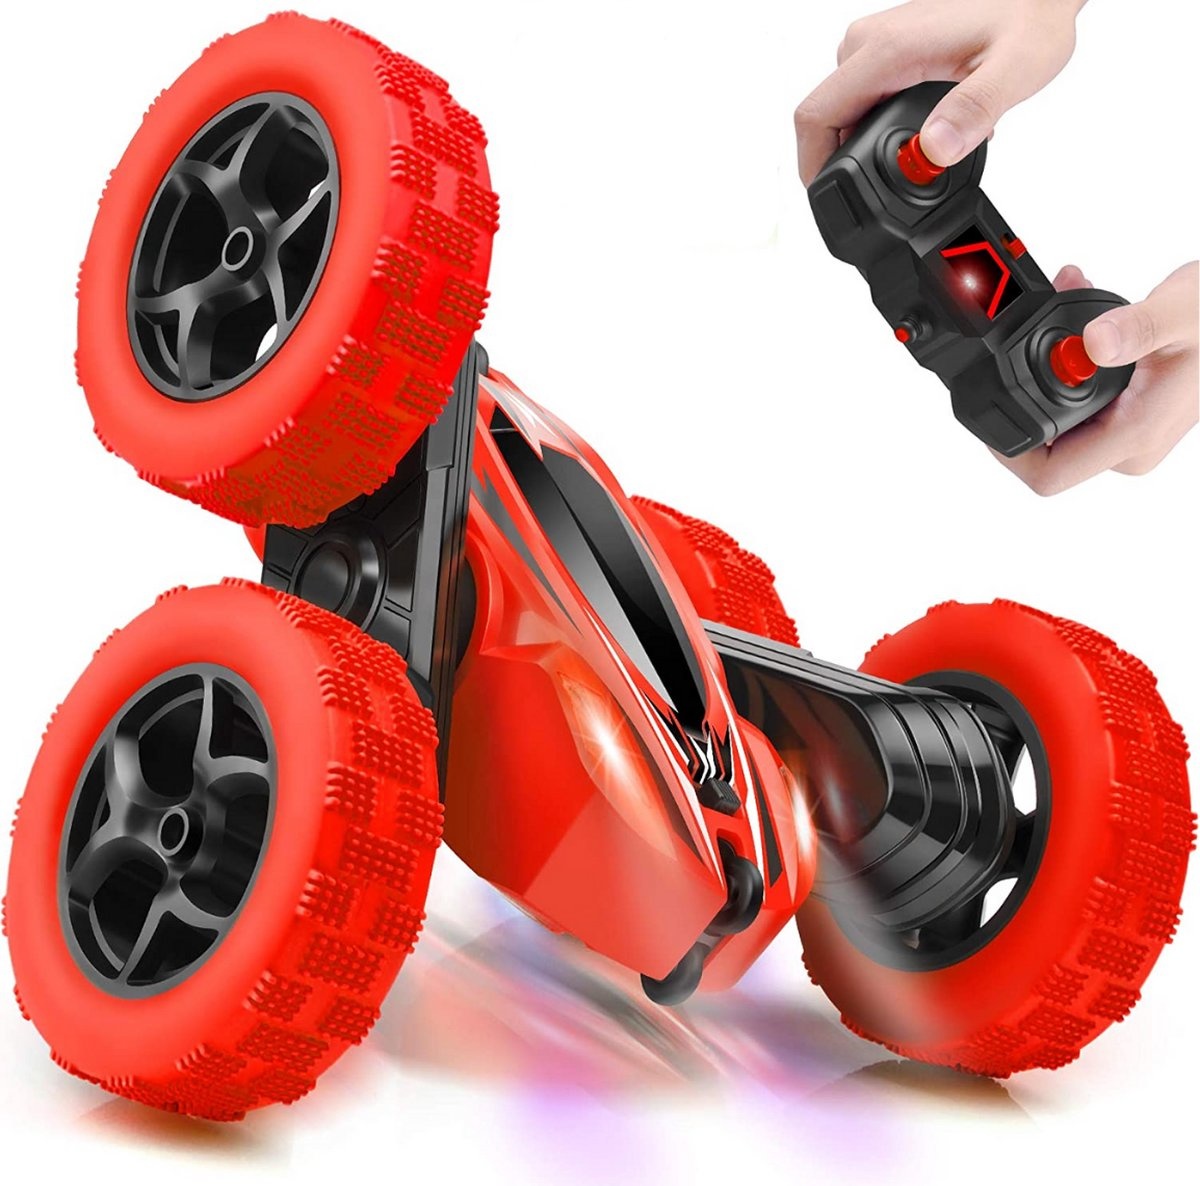 Hesje bouwen insluiten RC stunt auto op afstandsbediening - Voor kinderen en volwassenen - Rood -  Trendtrading